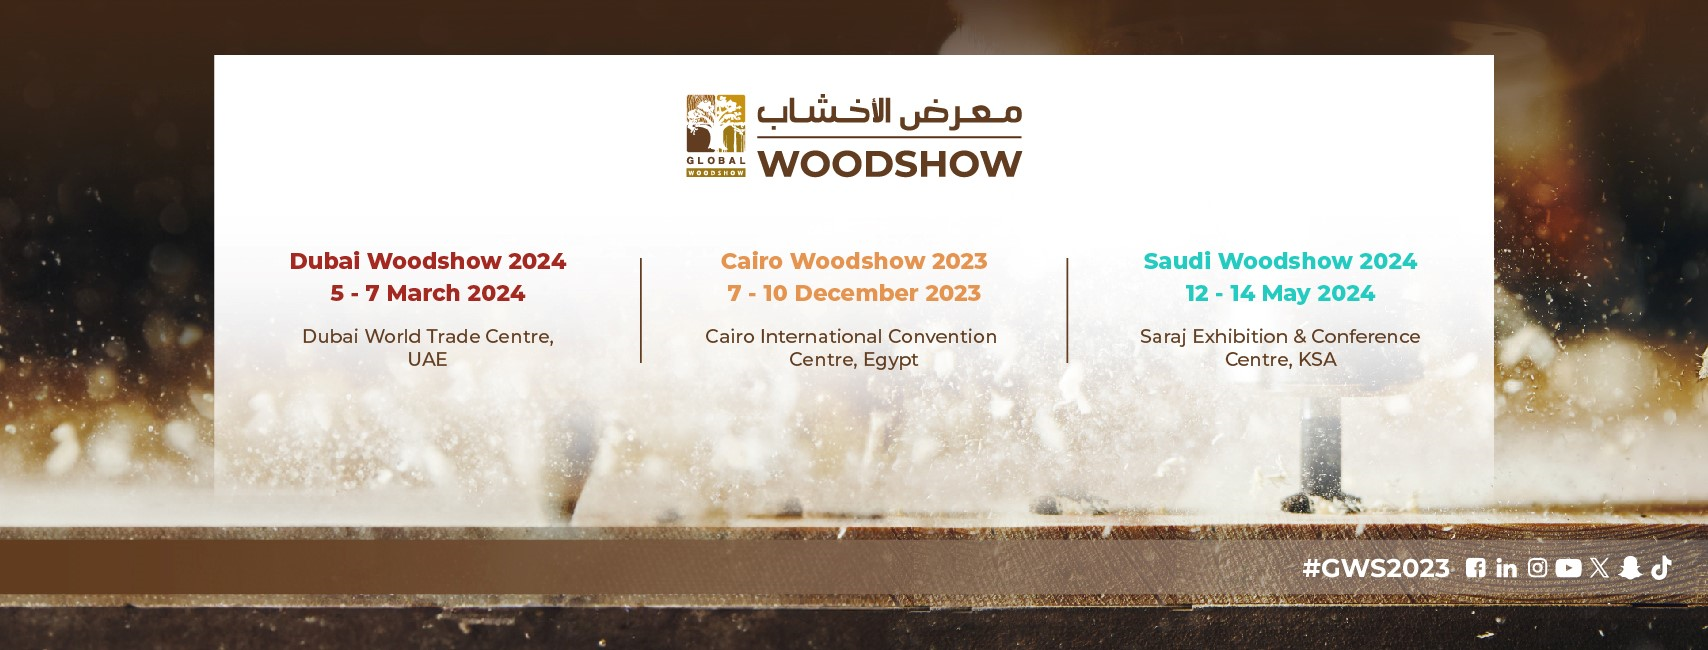 [ĐĂNG KÝ THAM GIA] HỘI CHỢ CAIRO WOODSHOW CWS 2023 (CAIRO, AI CẬP)